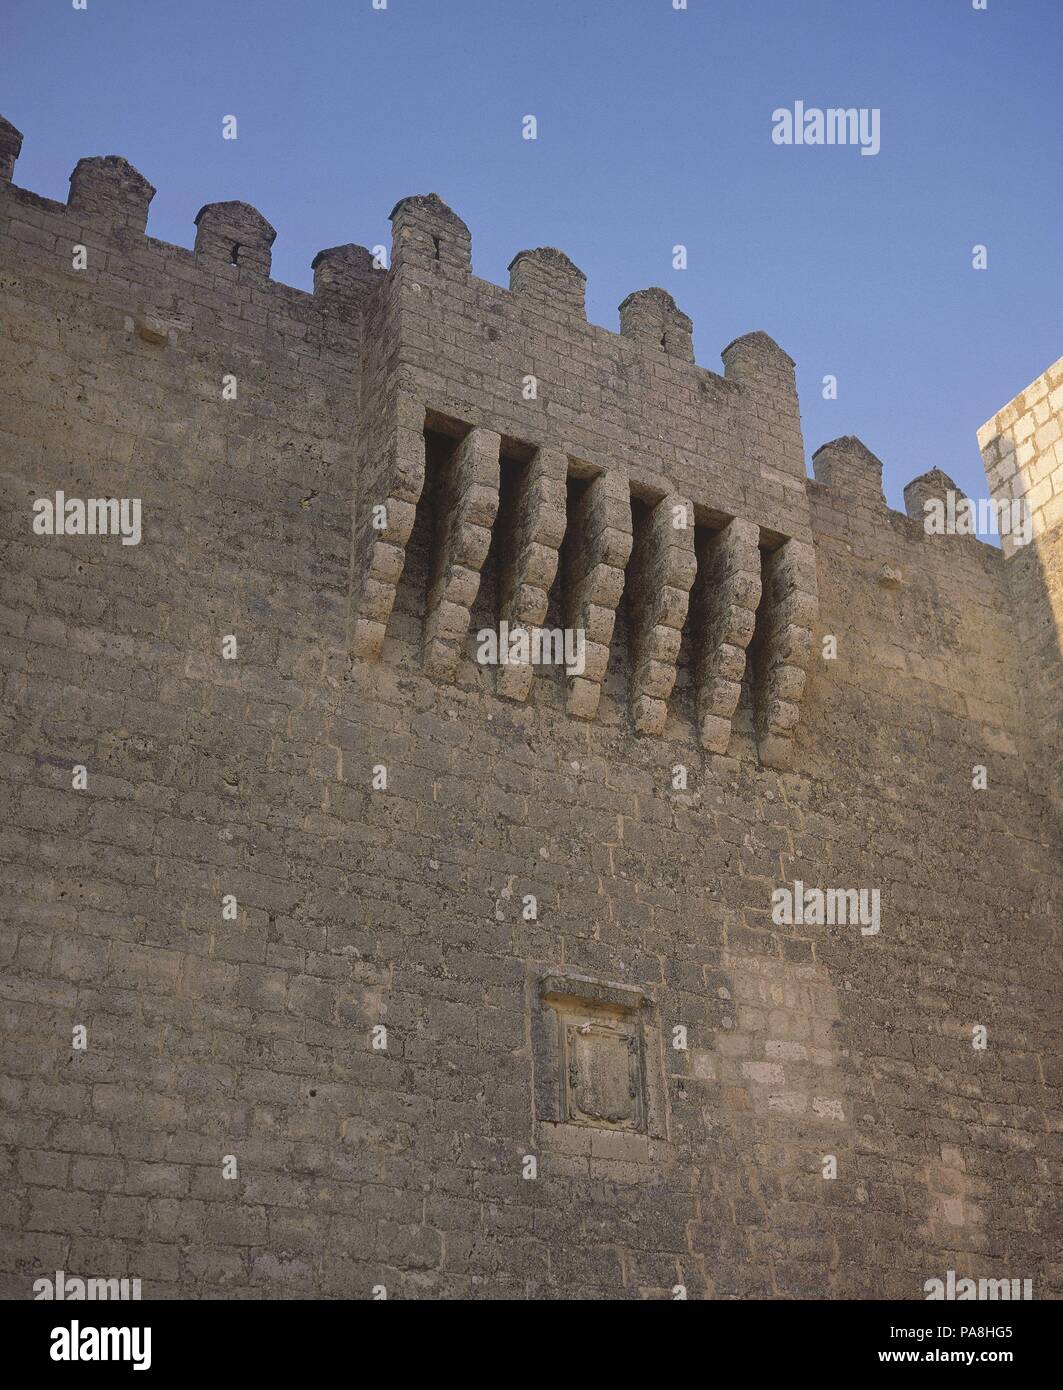 CASTILLO-ALMENA S XIV. Posizione: esterno, MONTE ALEGRE, PALENCIA, Spagna. Foto Stock